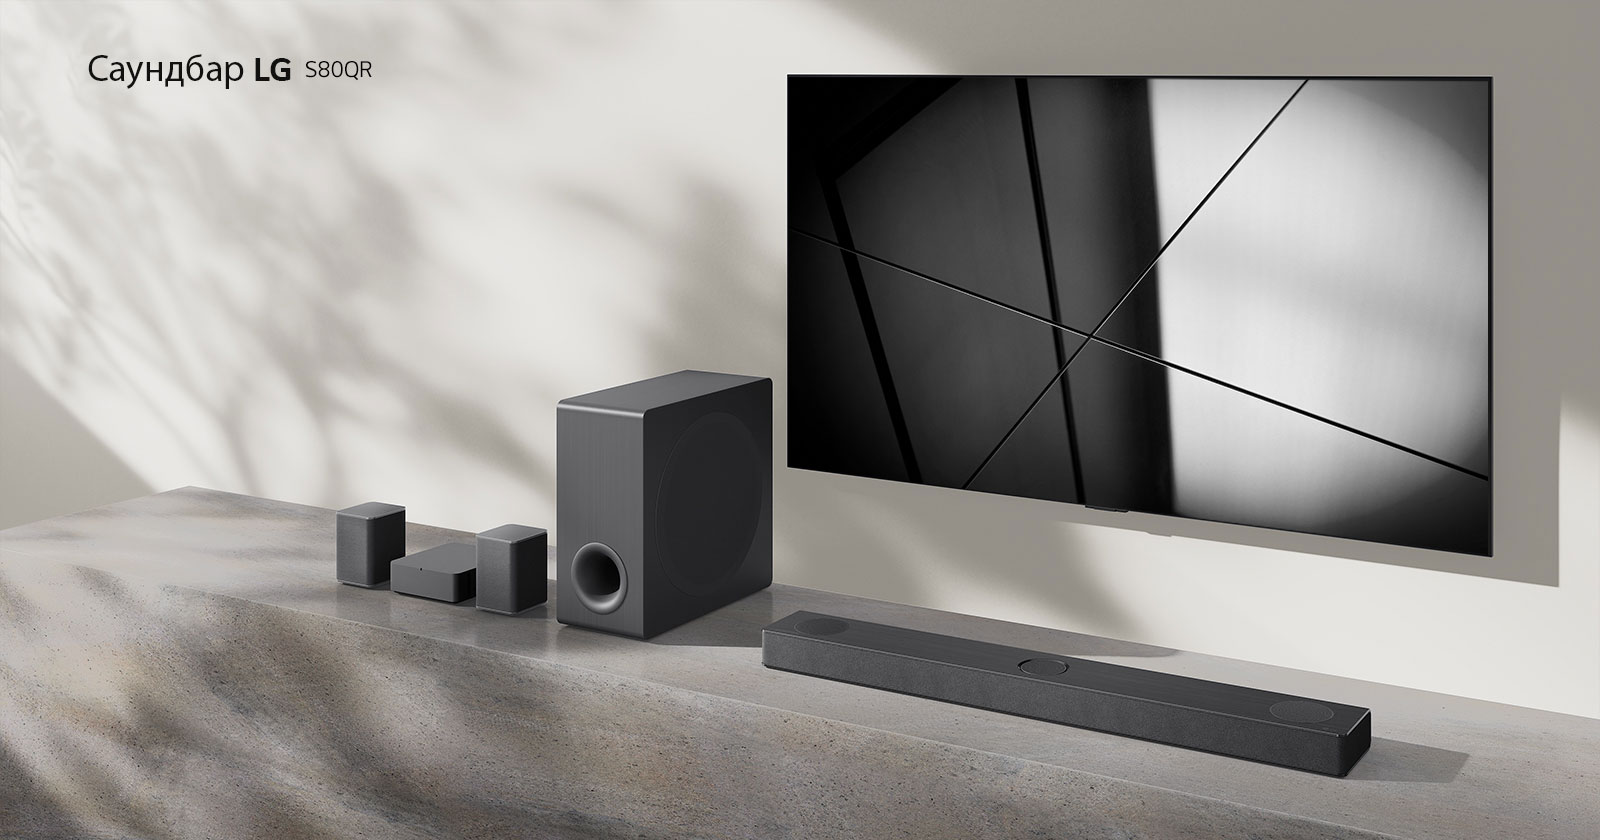 Саундбар LG S80QY и телевизор LG са поставени заедно във всекидневната. Телевизорът е включен и показва черно-бяло изображение.